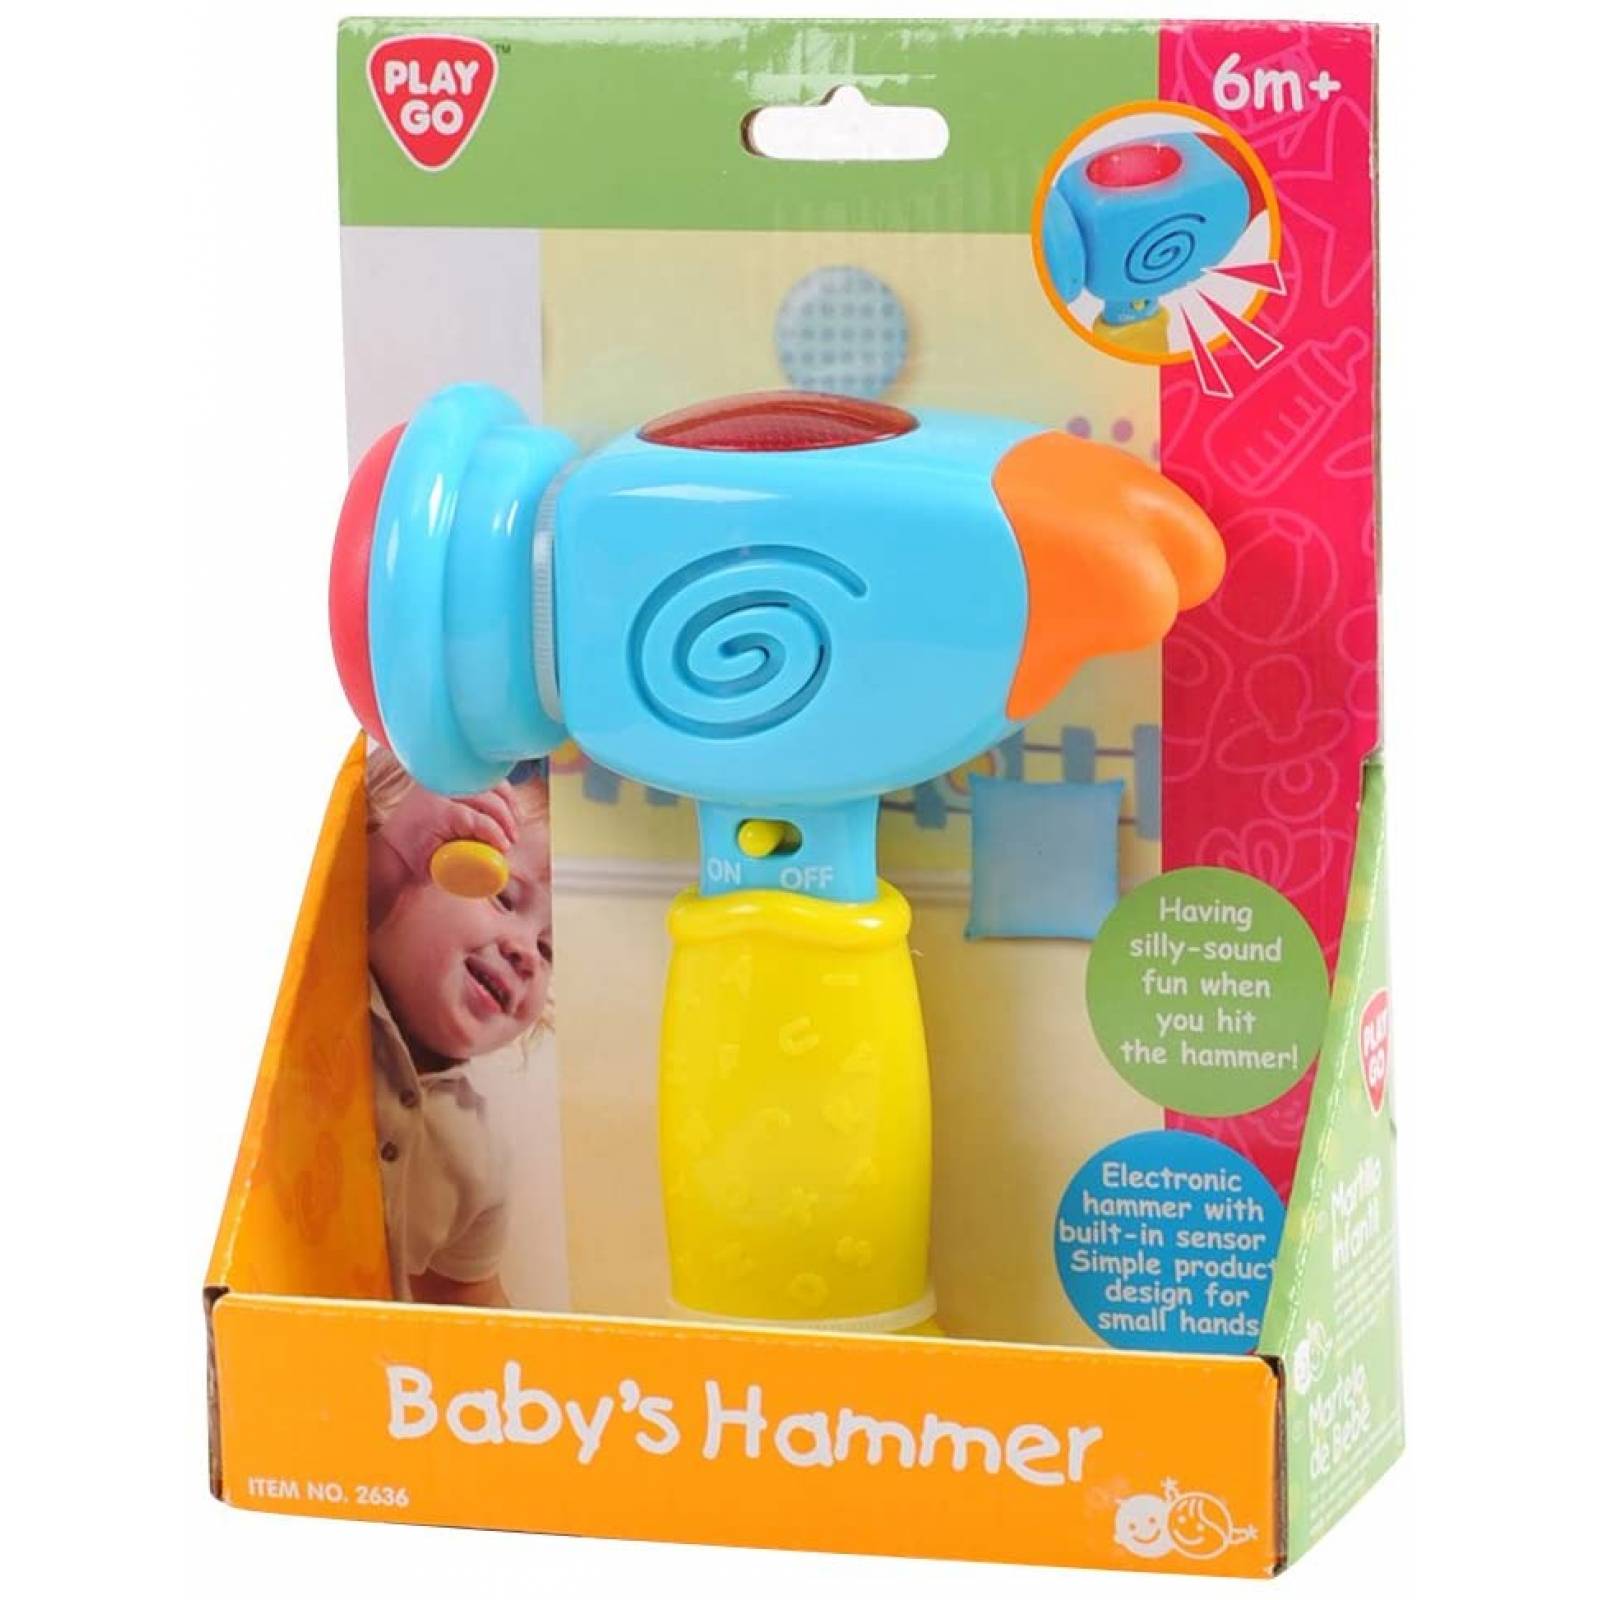 Martillo de juguete para bebe playgo baby's hammer b/o